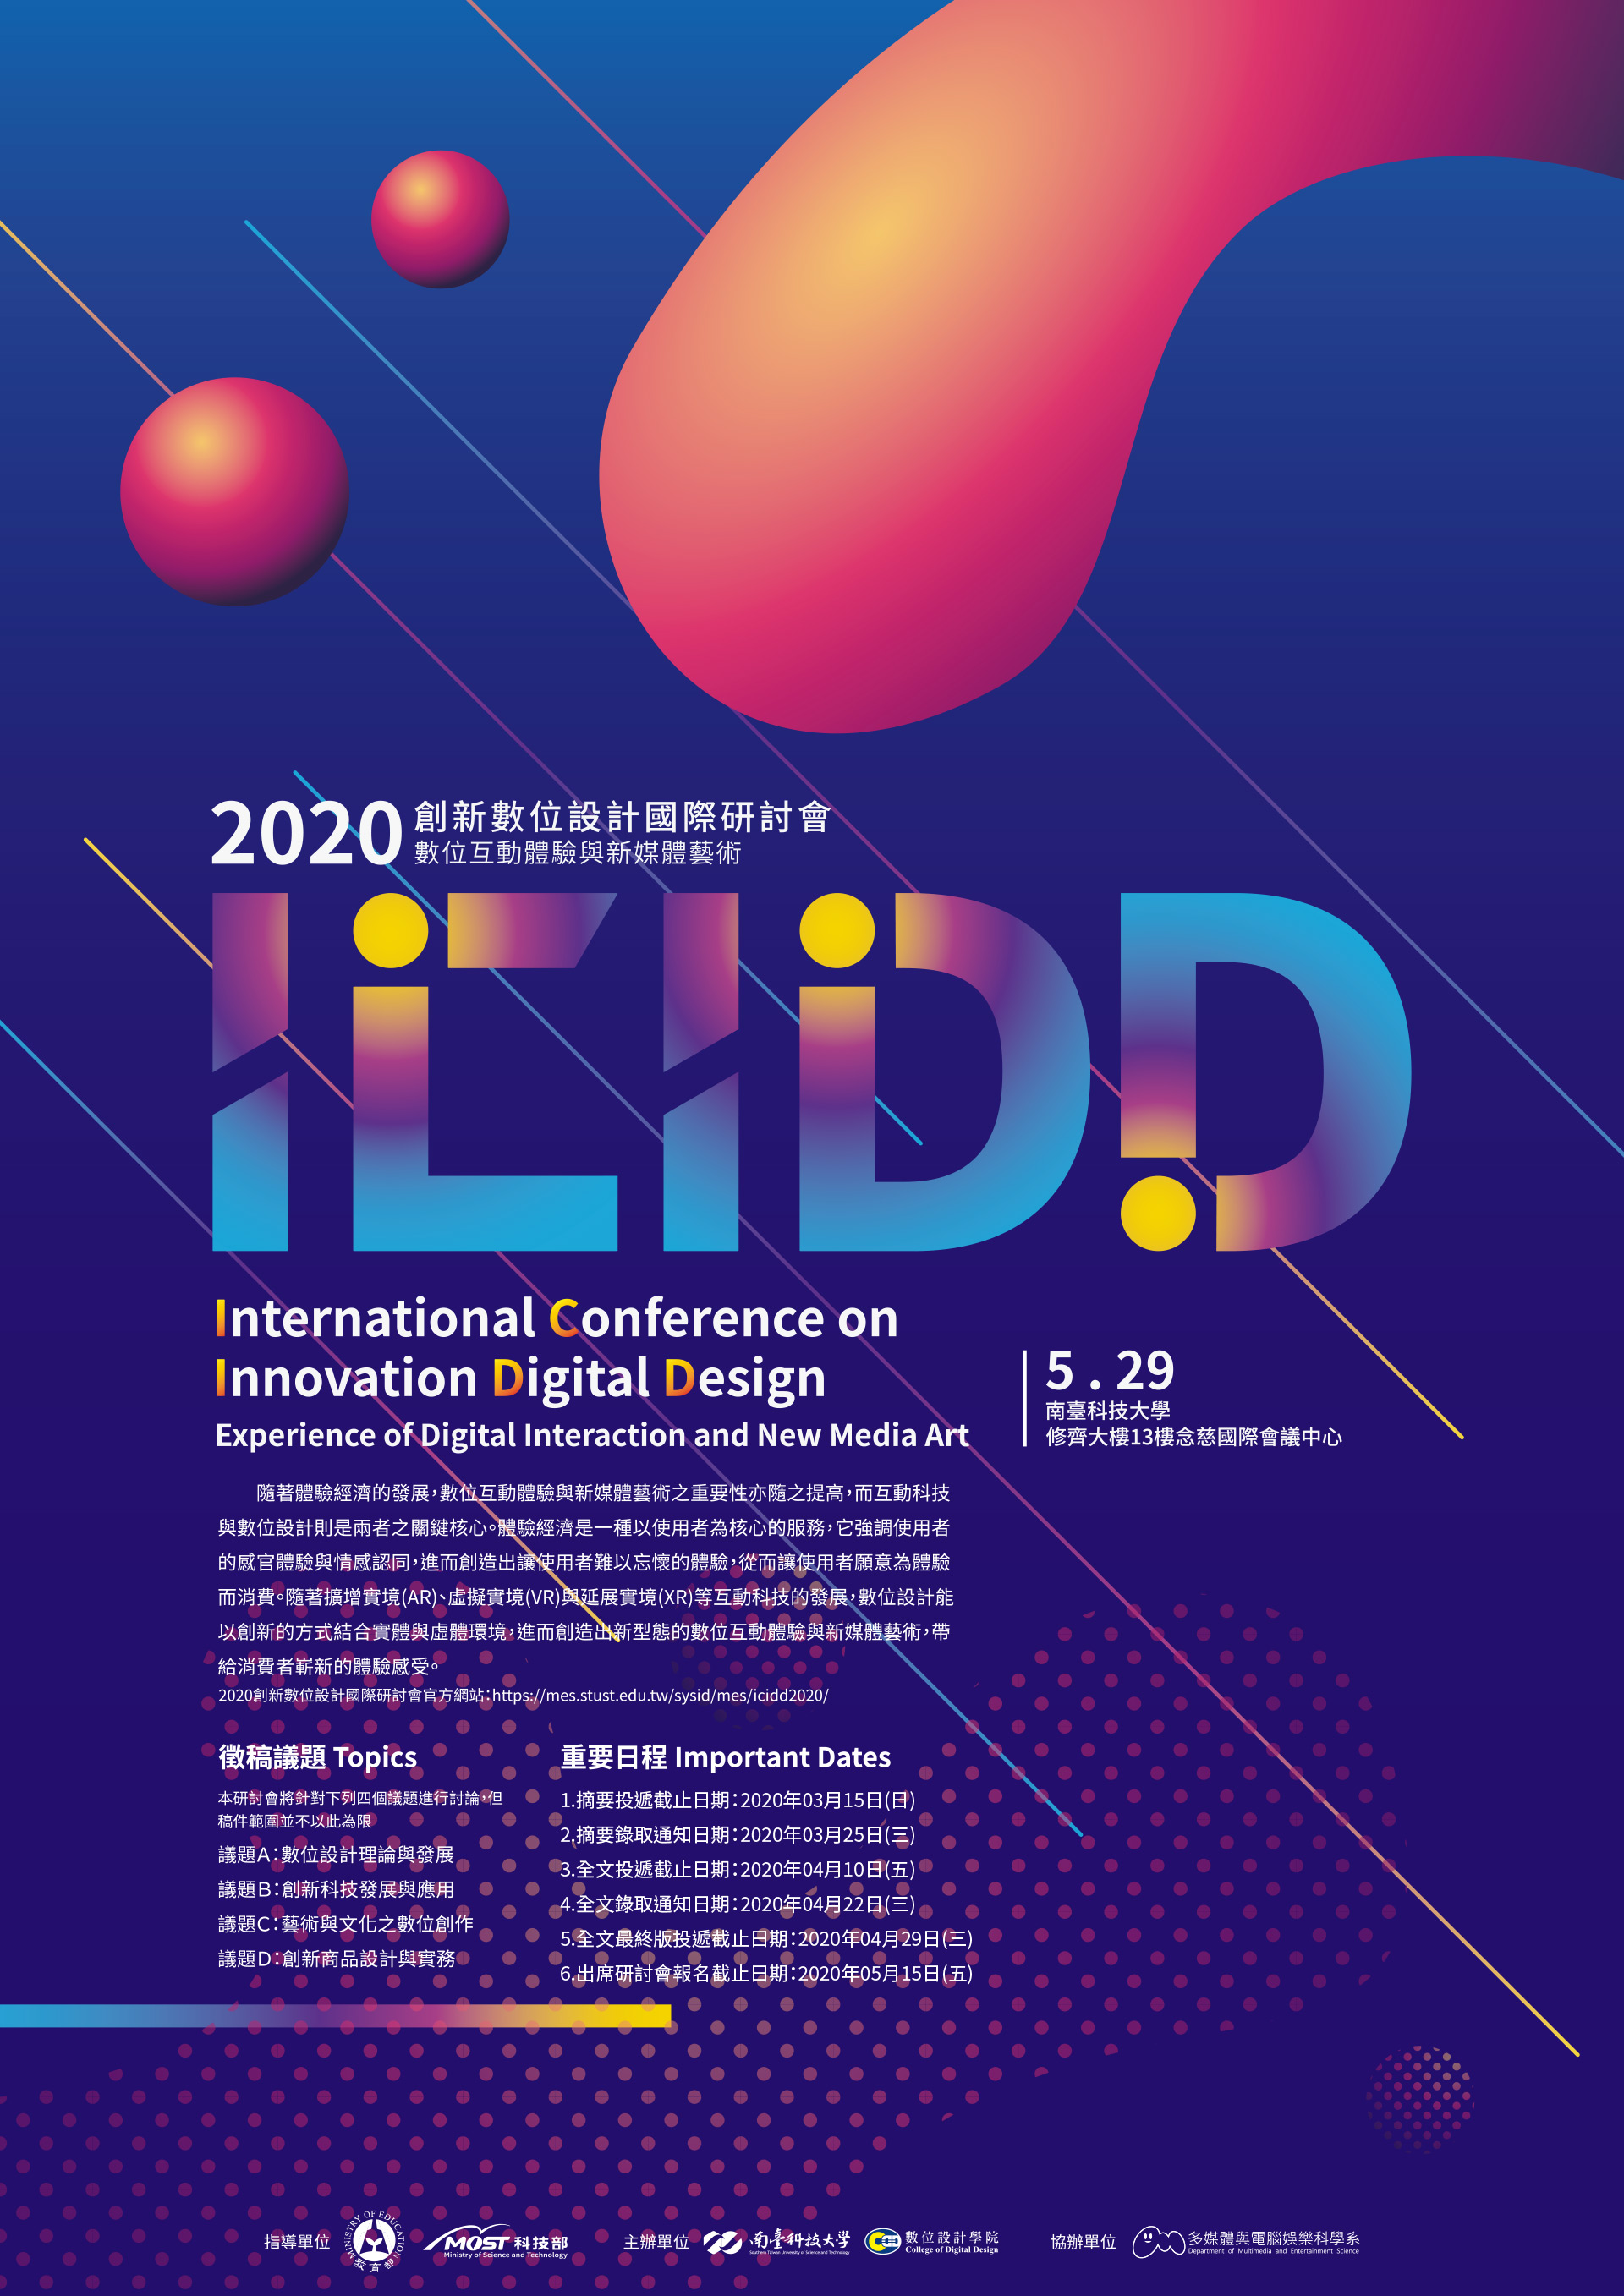 2020創新數位設計國際學術研討會論文徵稿 海報